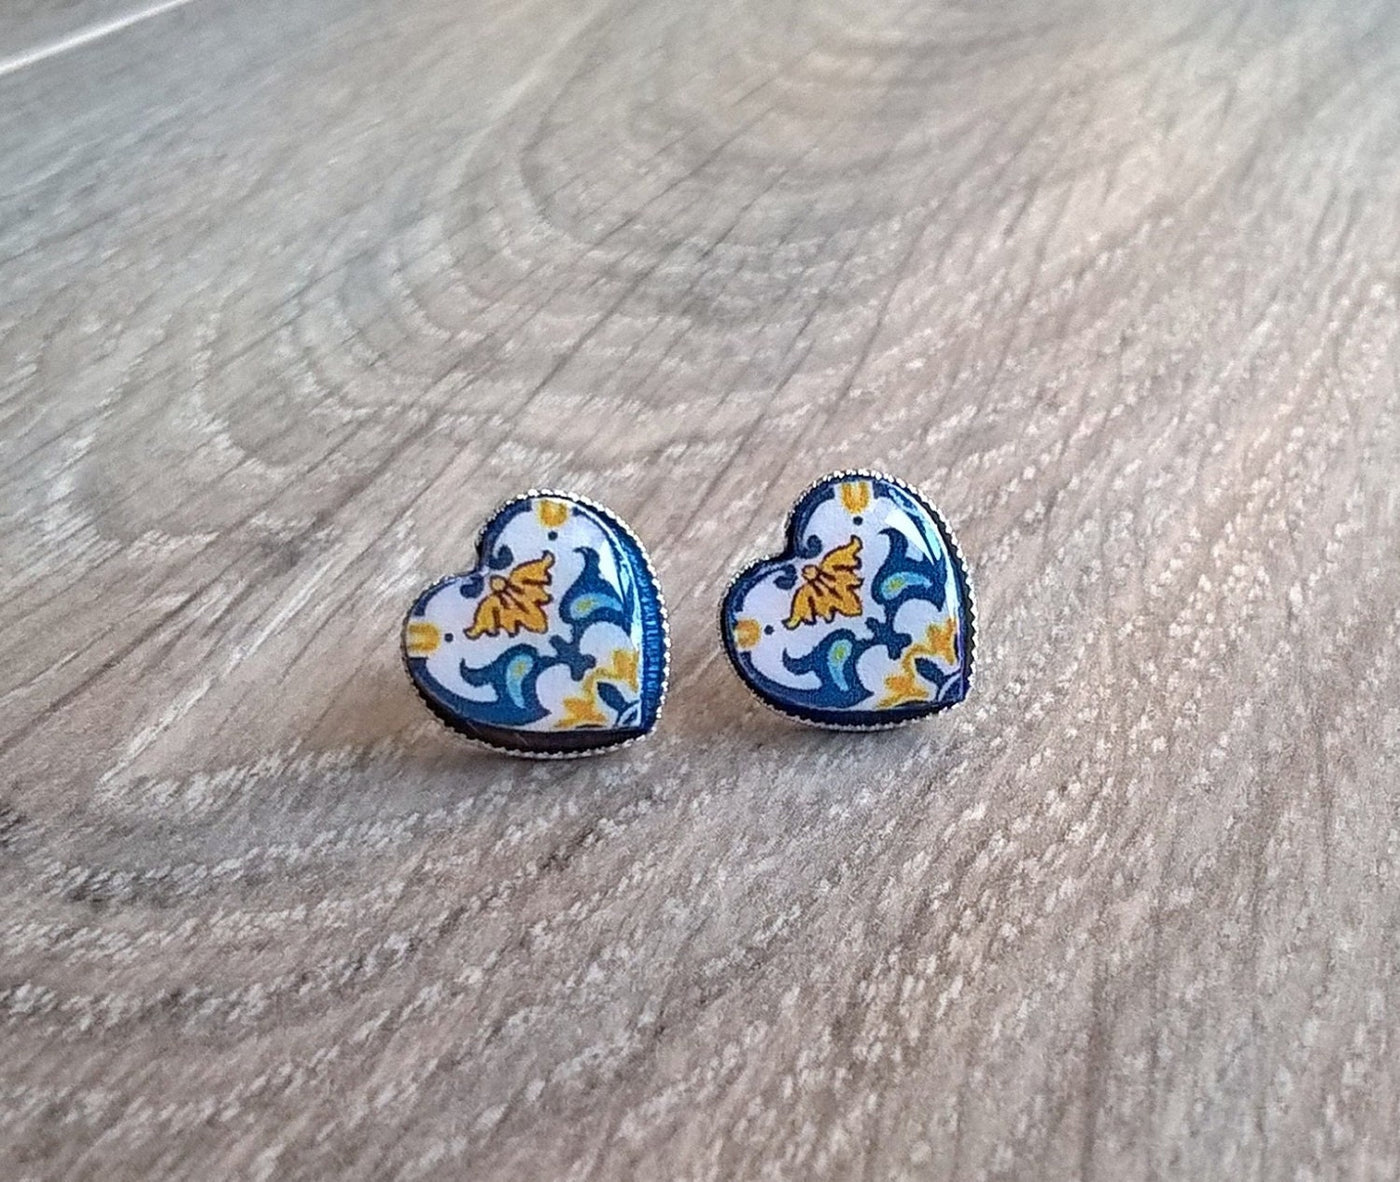 EULALIA - Small Heart Tile Earrings